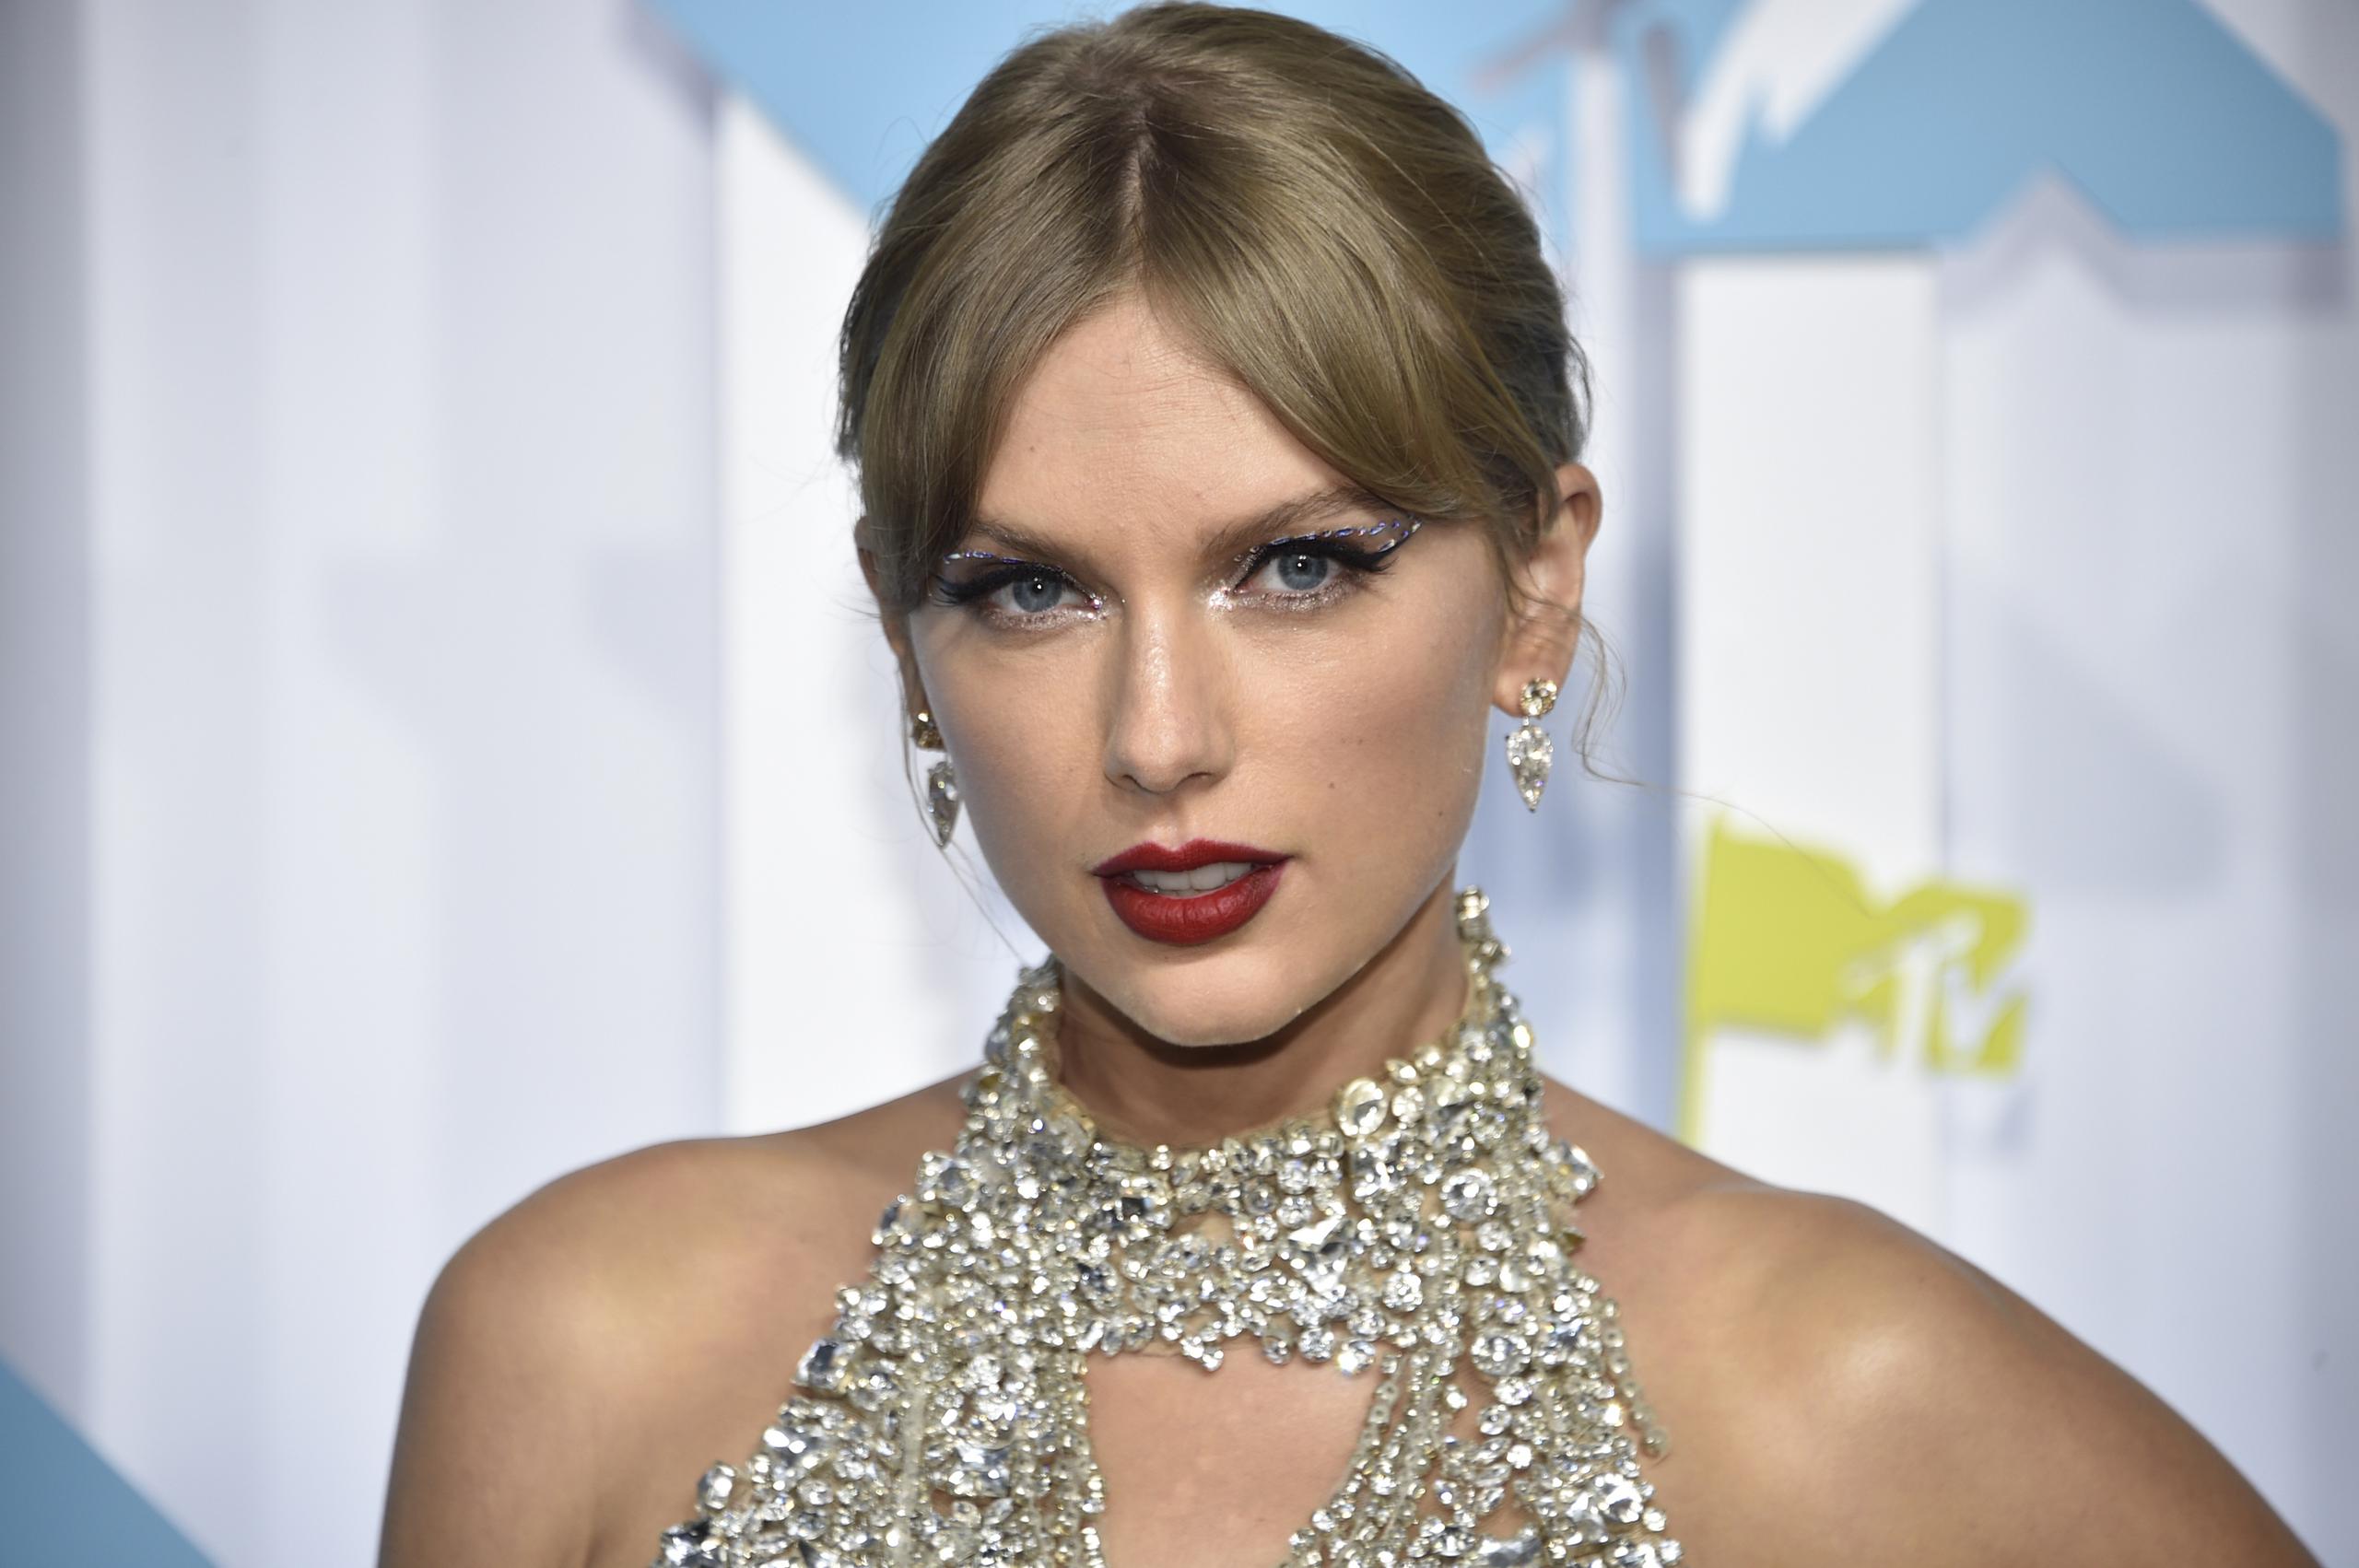 Taylor Swift anunció su vuelta a los escenarios este año con el denominado “The Eras Tour”, una gira internacional, la primera en cinco años, con la que está batiendo récords en la venta de entradas.